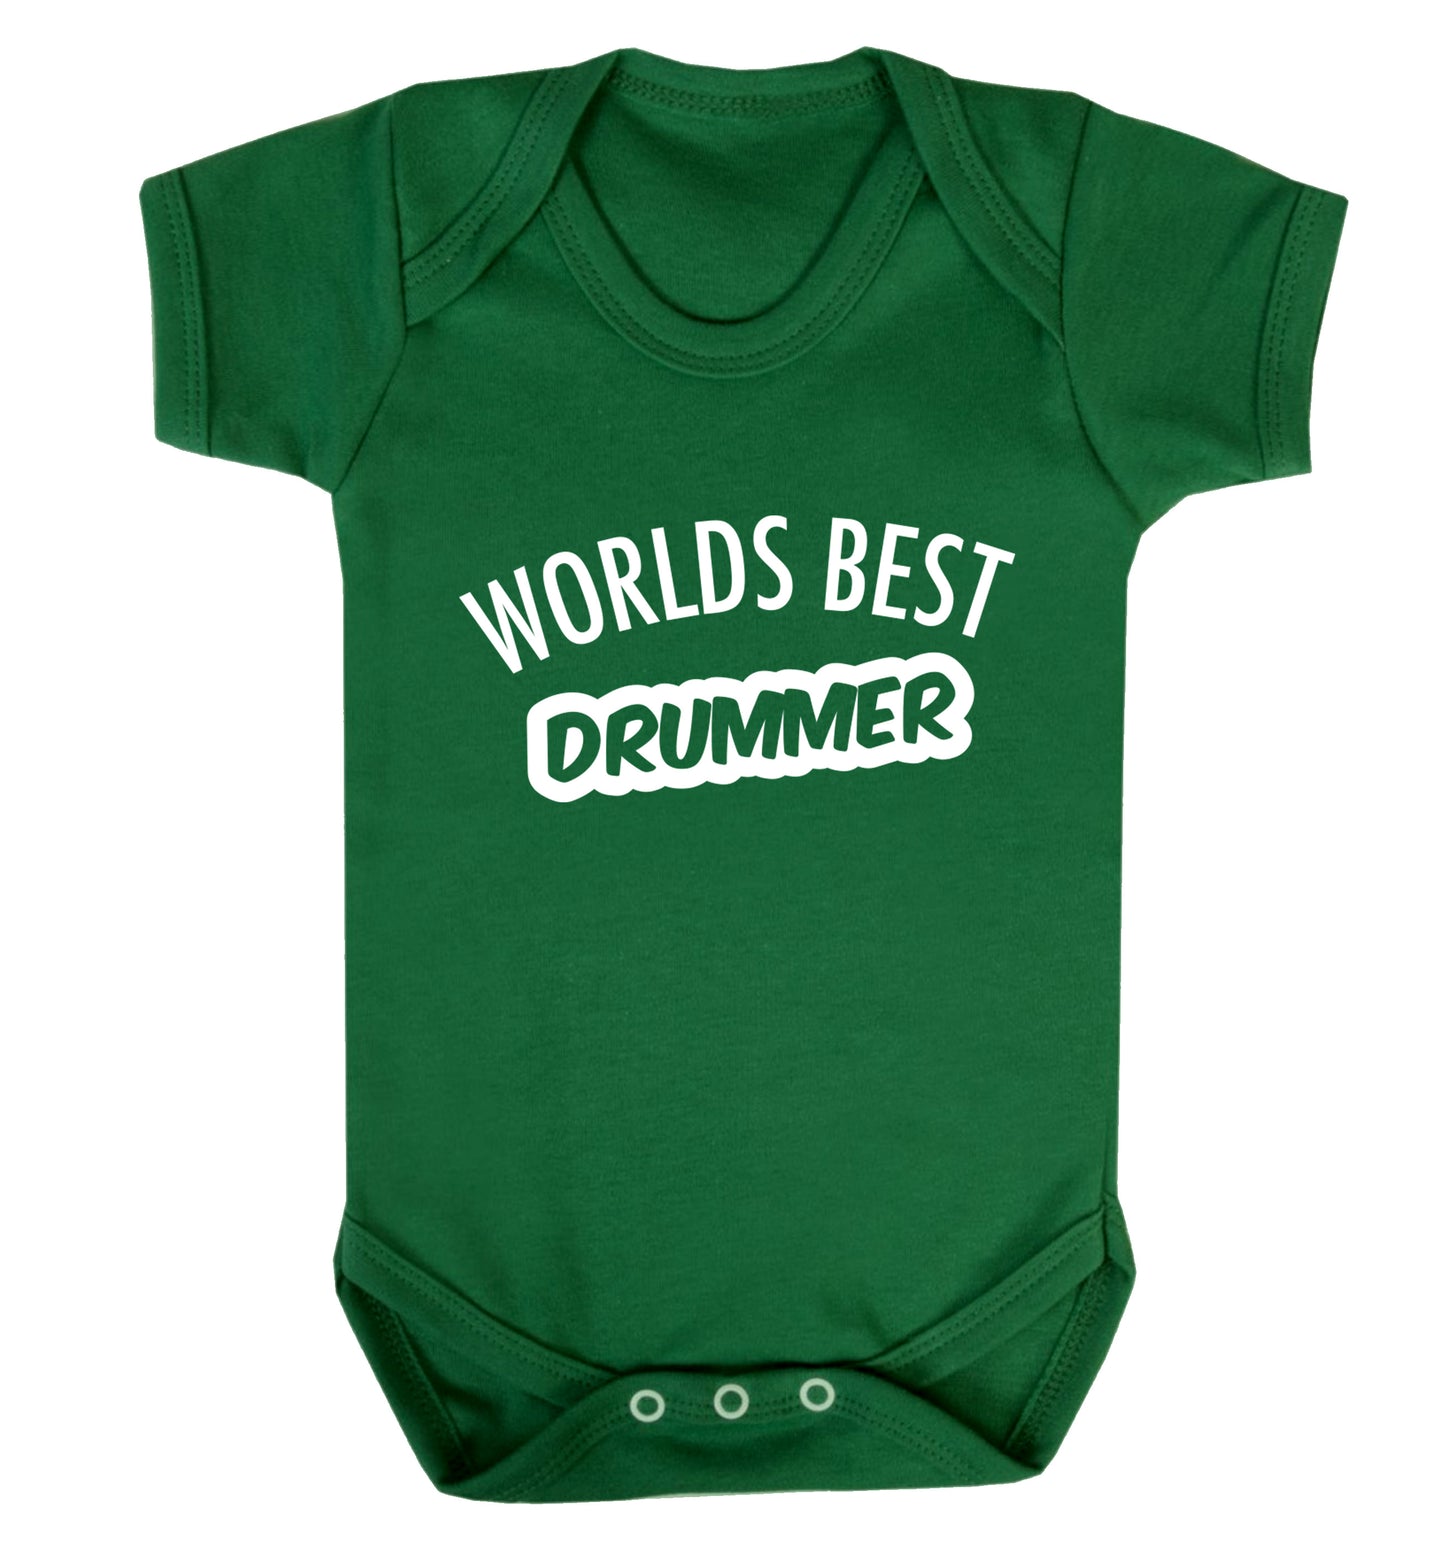 Worlds best drummer Baby Vest green 18-24 months